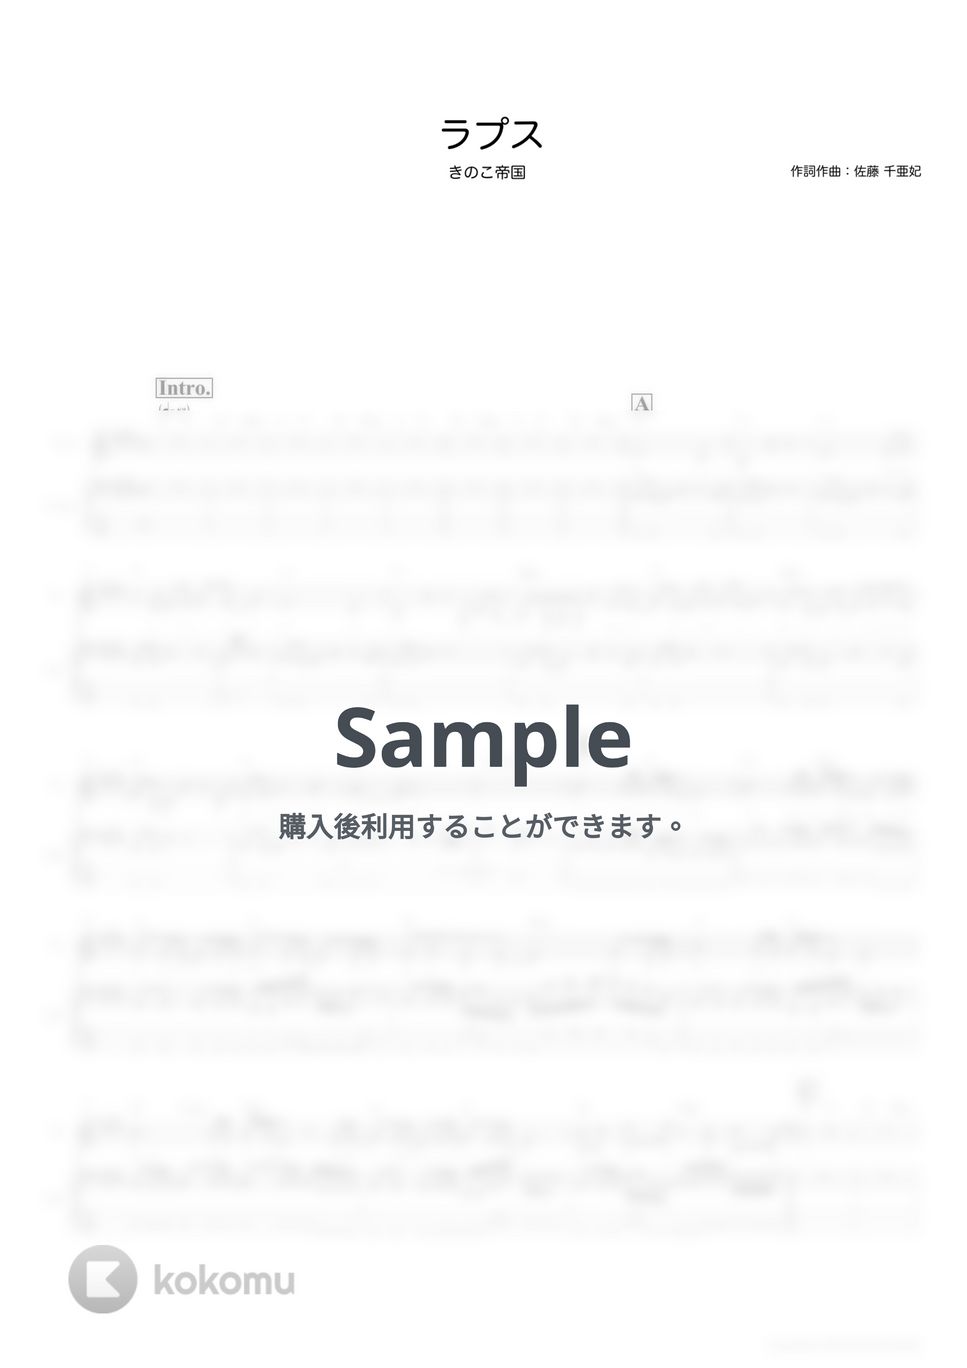 きのこ帝国 - ラプス (ベーススコア・歌詞・コード付き) by TRIAD GUITAR SCHOOL